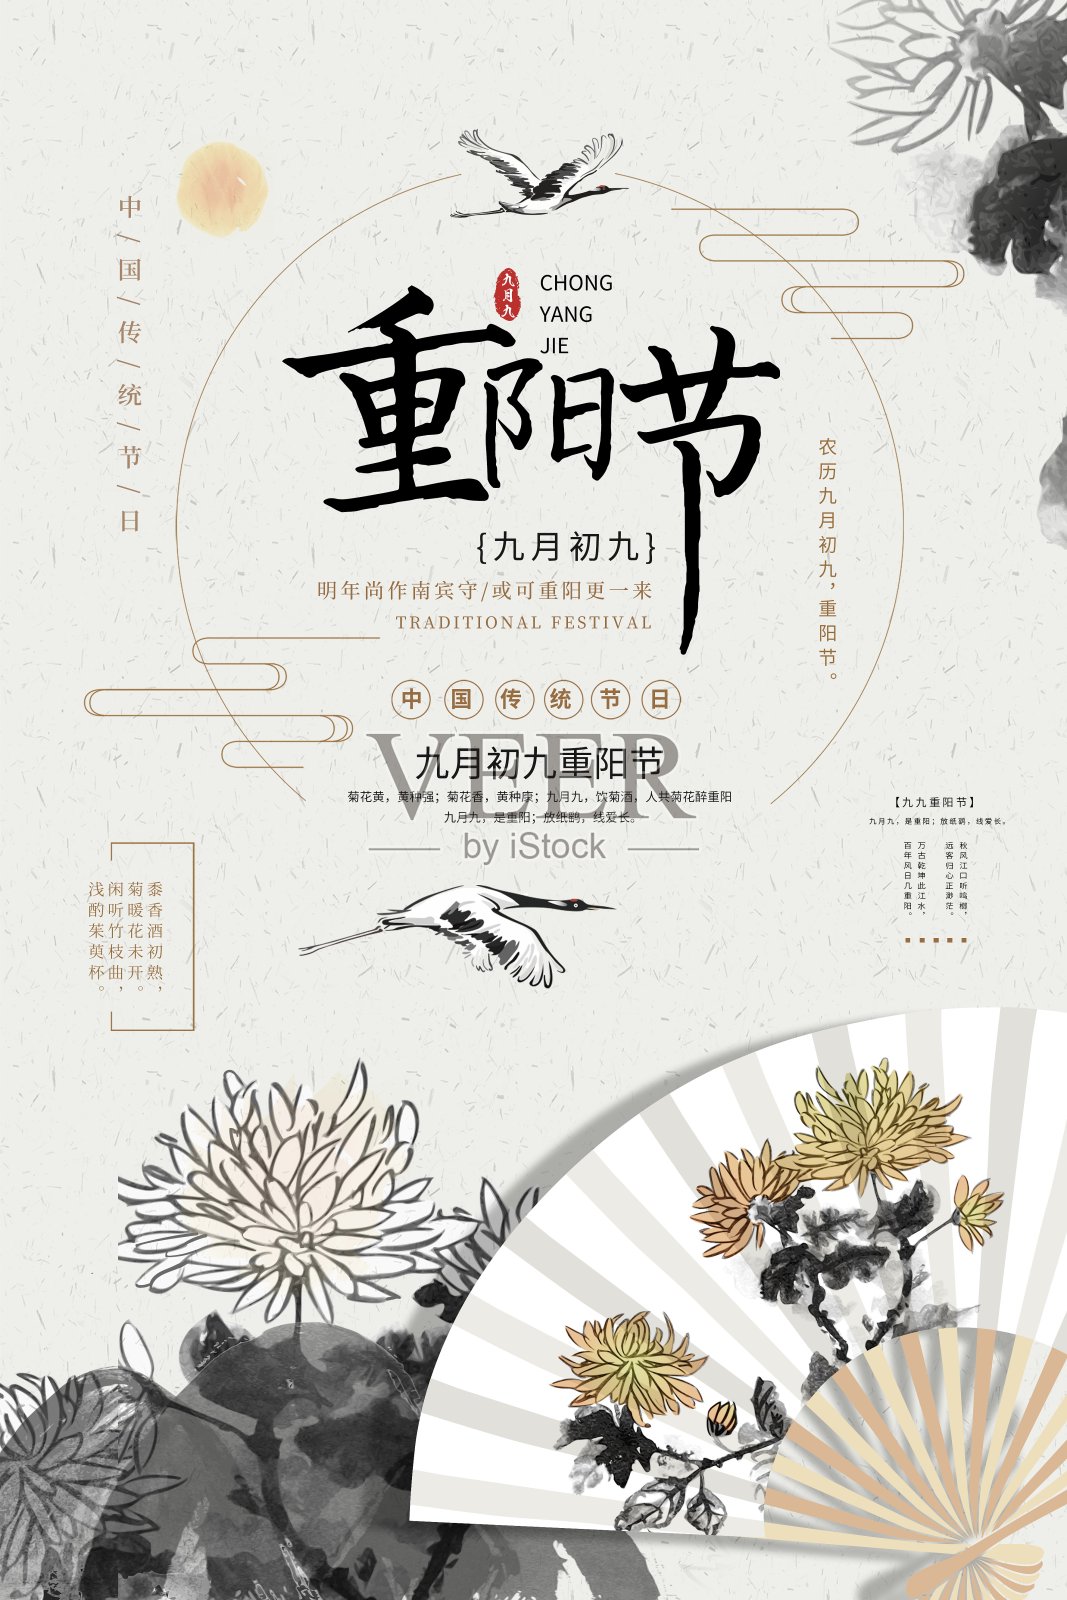 极简中国风重阳节节日海报设计模板素材